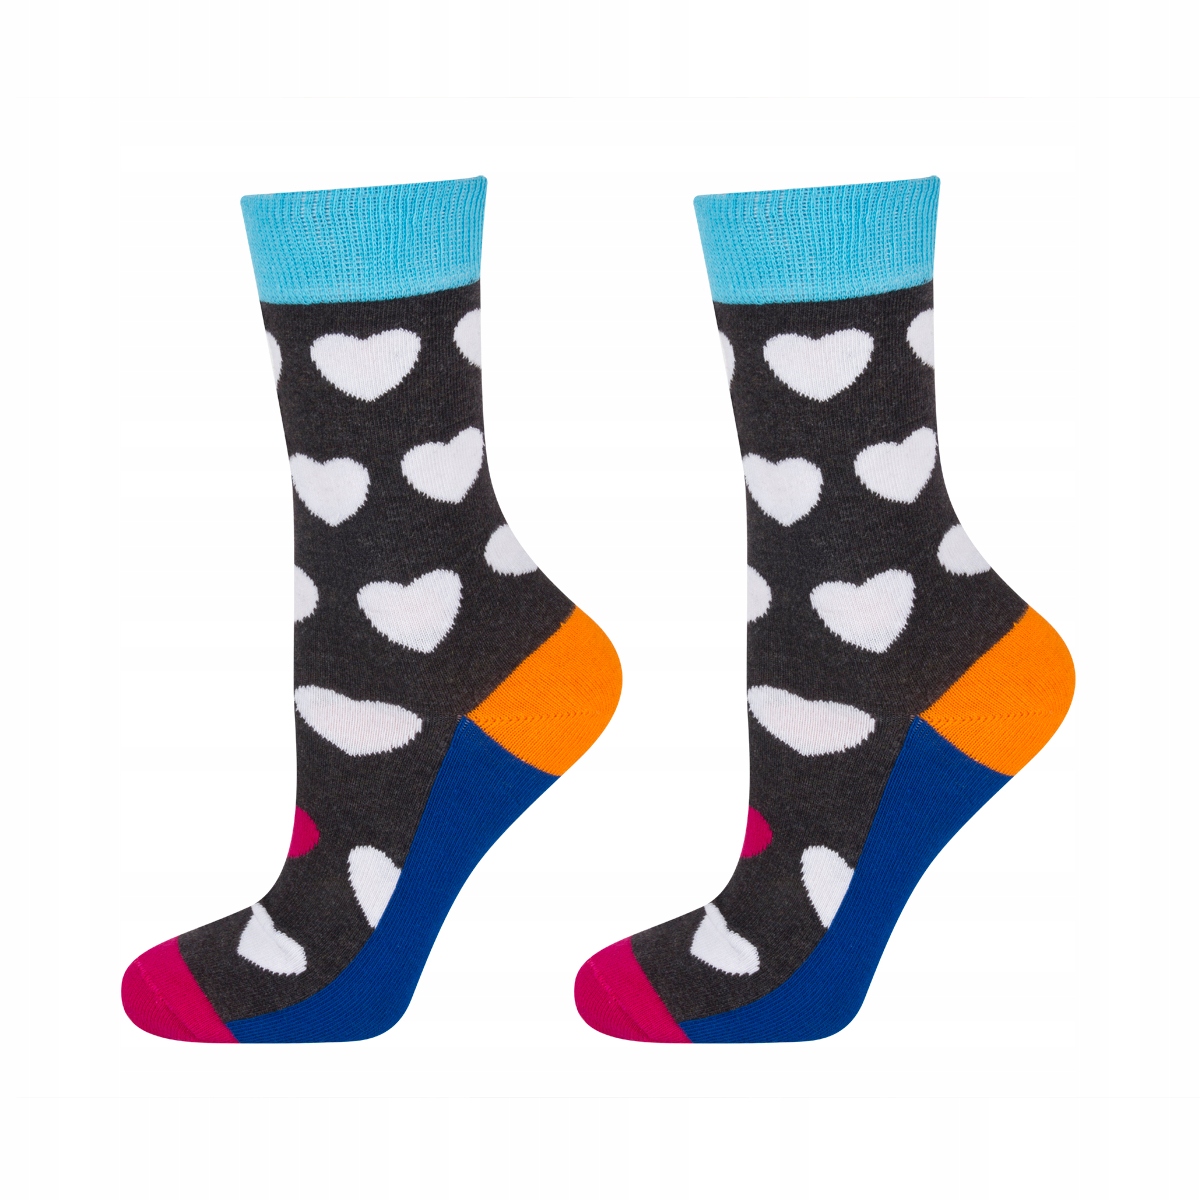 Kinder Socken SOXO GOOD STUFF Herzen 5,99 € - | mit Online-Shop SOXO